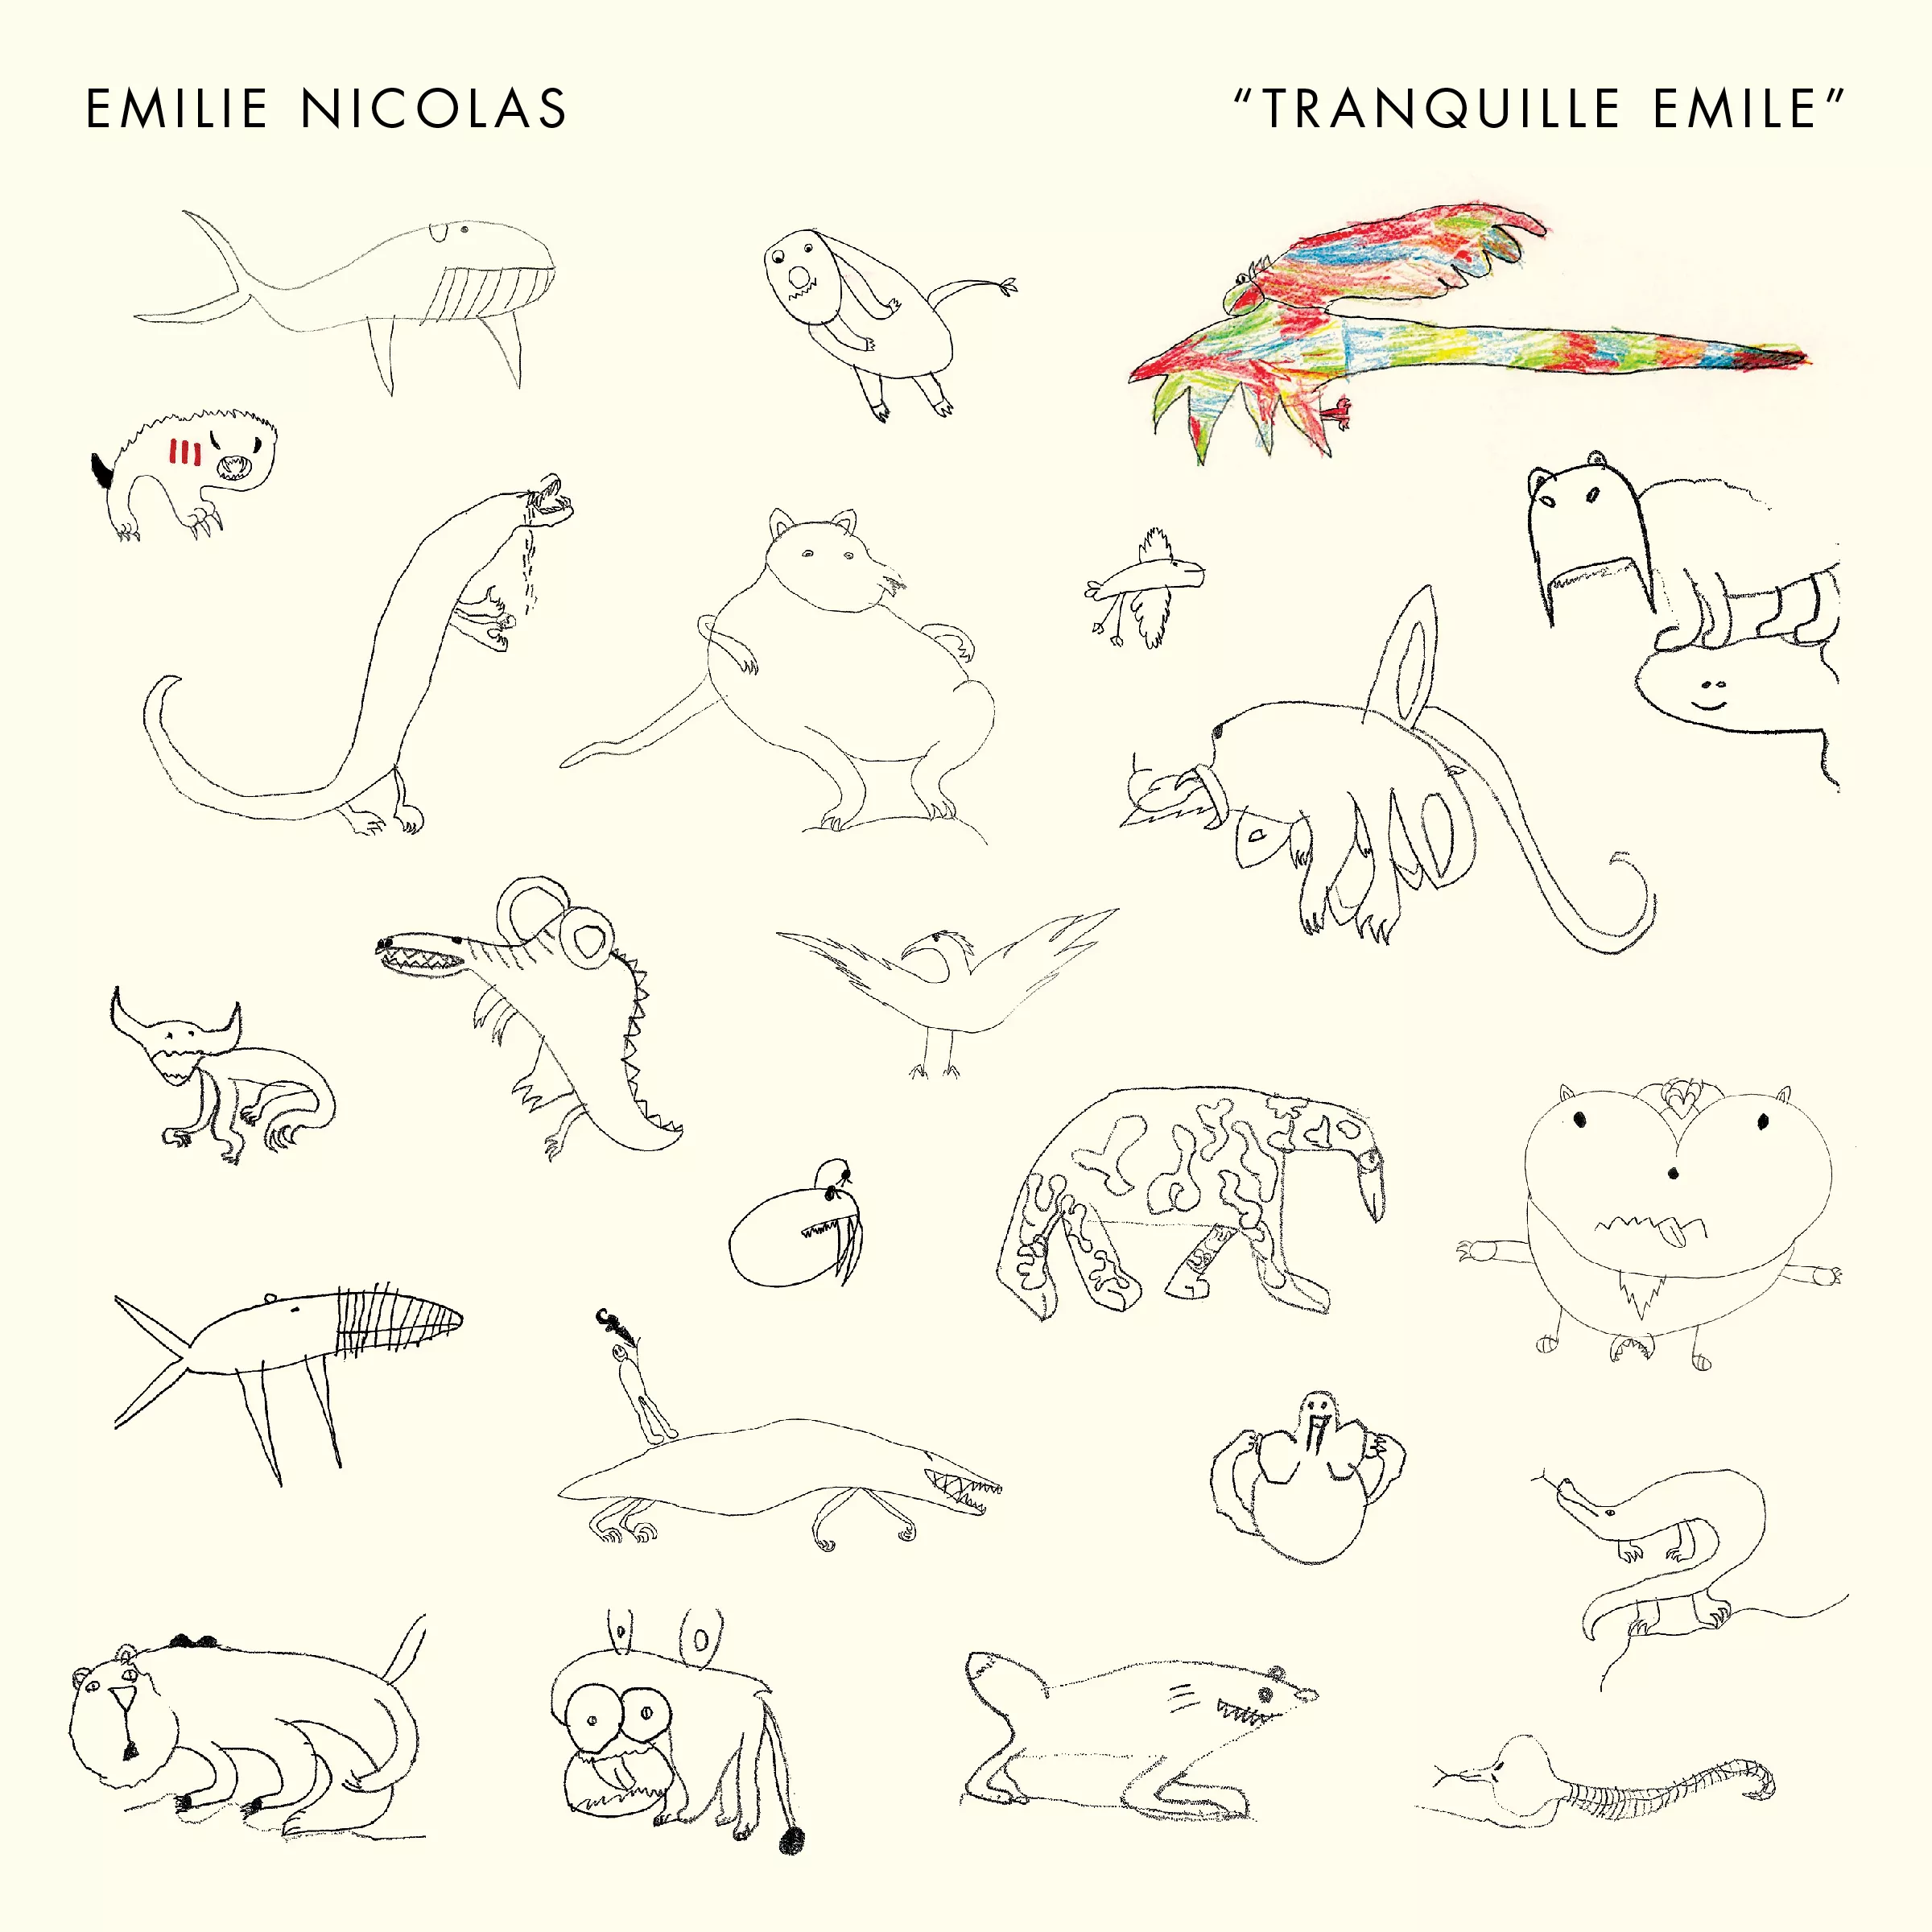 Tranquille Emile - Emilie Nicolas